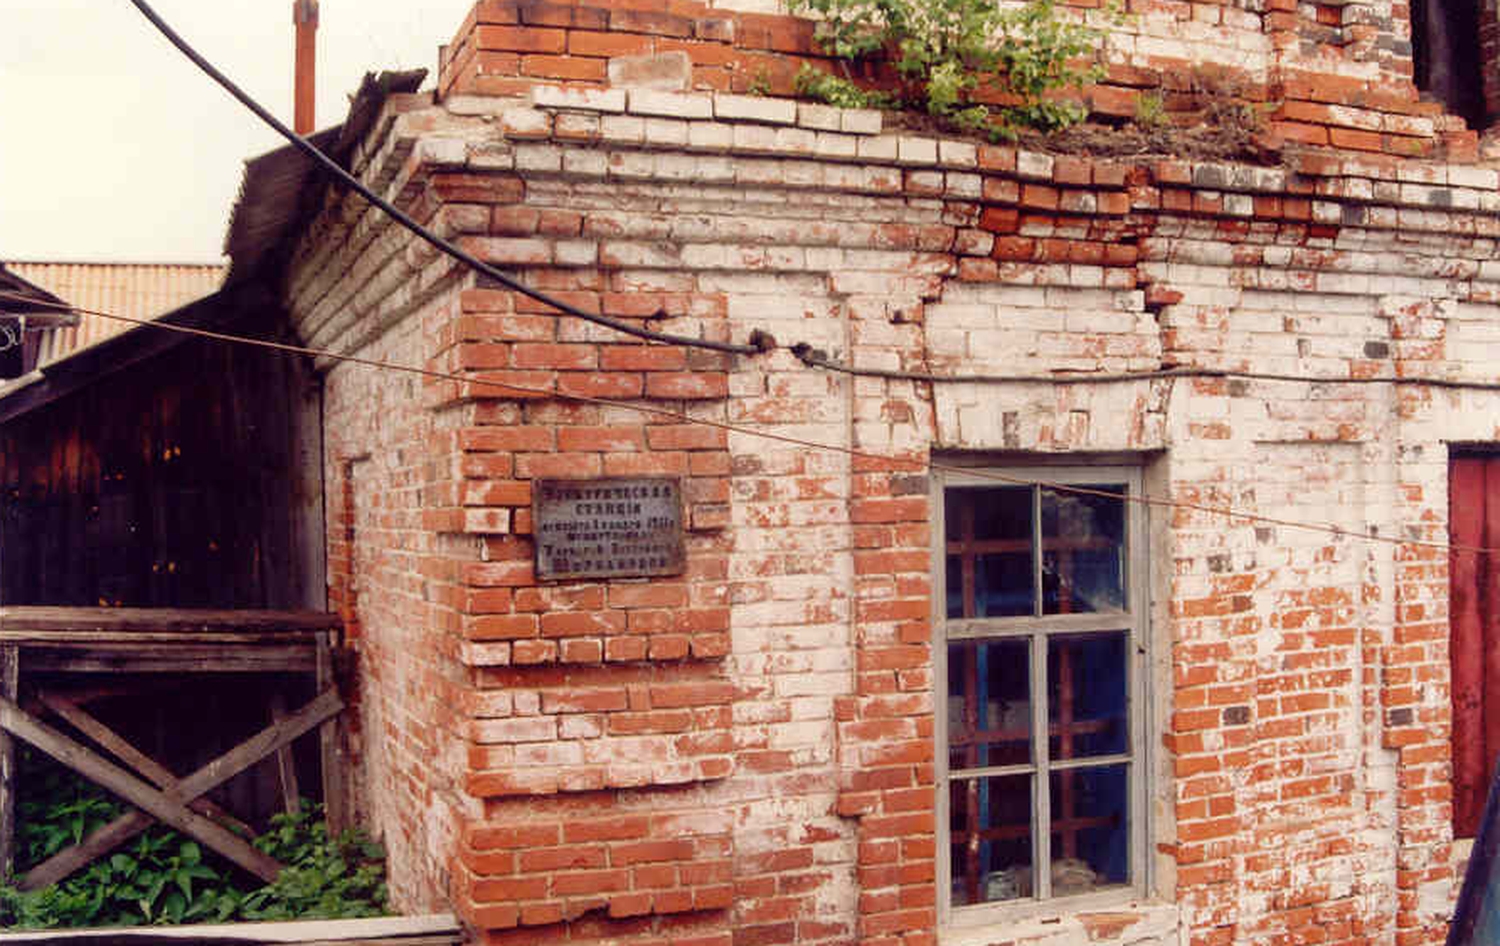 Электрическая станция - дом, где был установлен дизель-генератор, купленный в 1911г. на средства Варвары Петровны Щербаковой, и прослуживший до 1955г